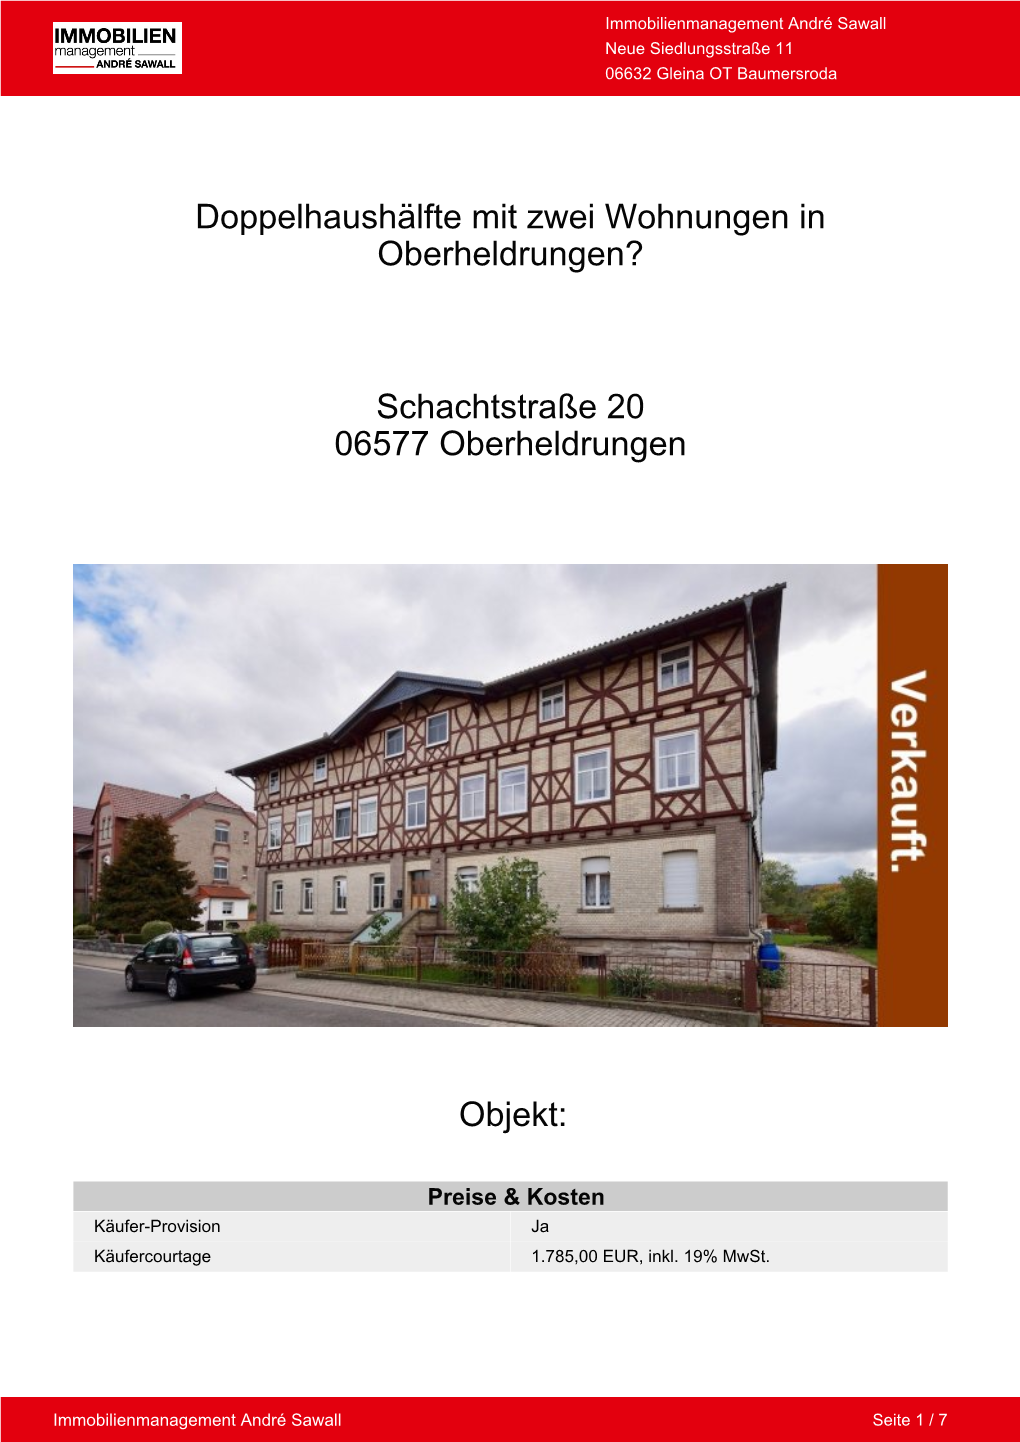 Doppelhaushälfte Mit Zwei Wohnungen in Oberheldrungen?